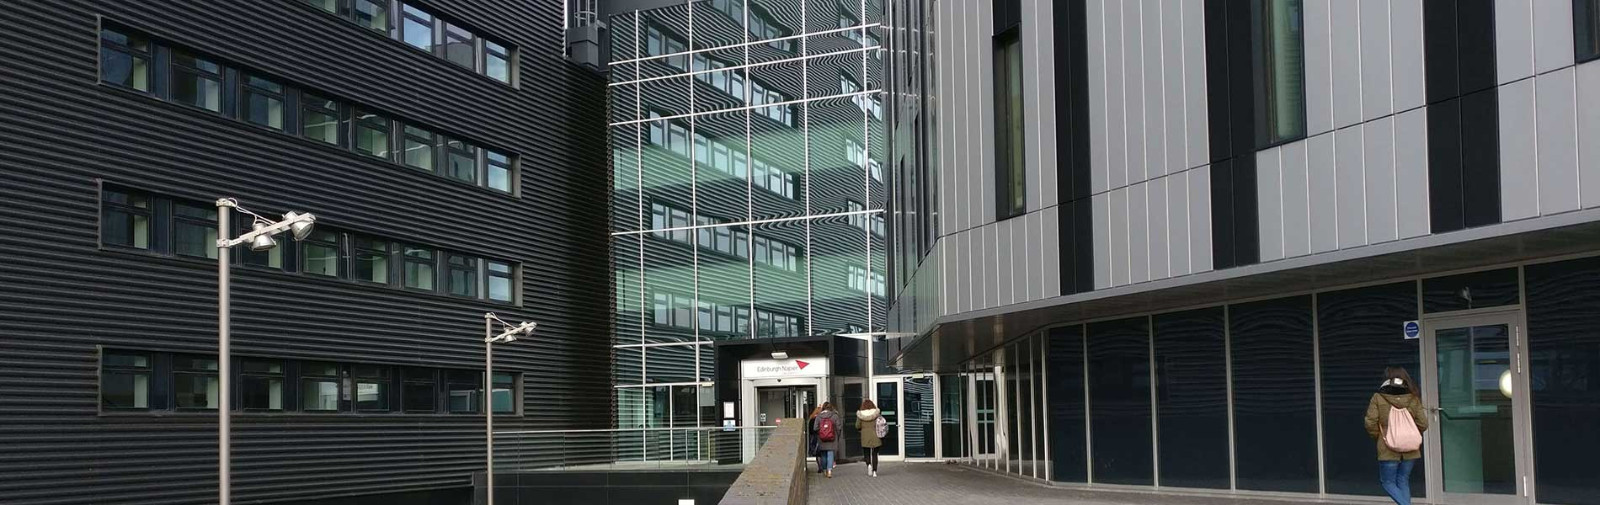 英国爱丁堡龙比亚大学教学楼入口